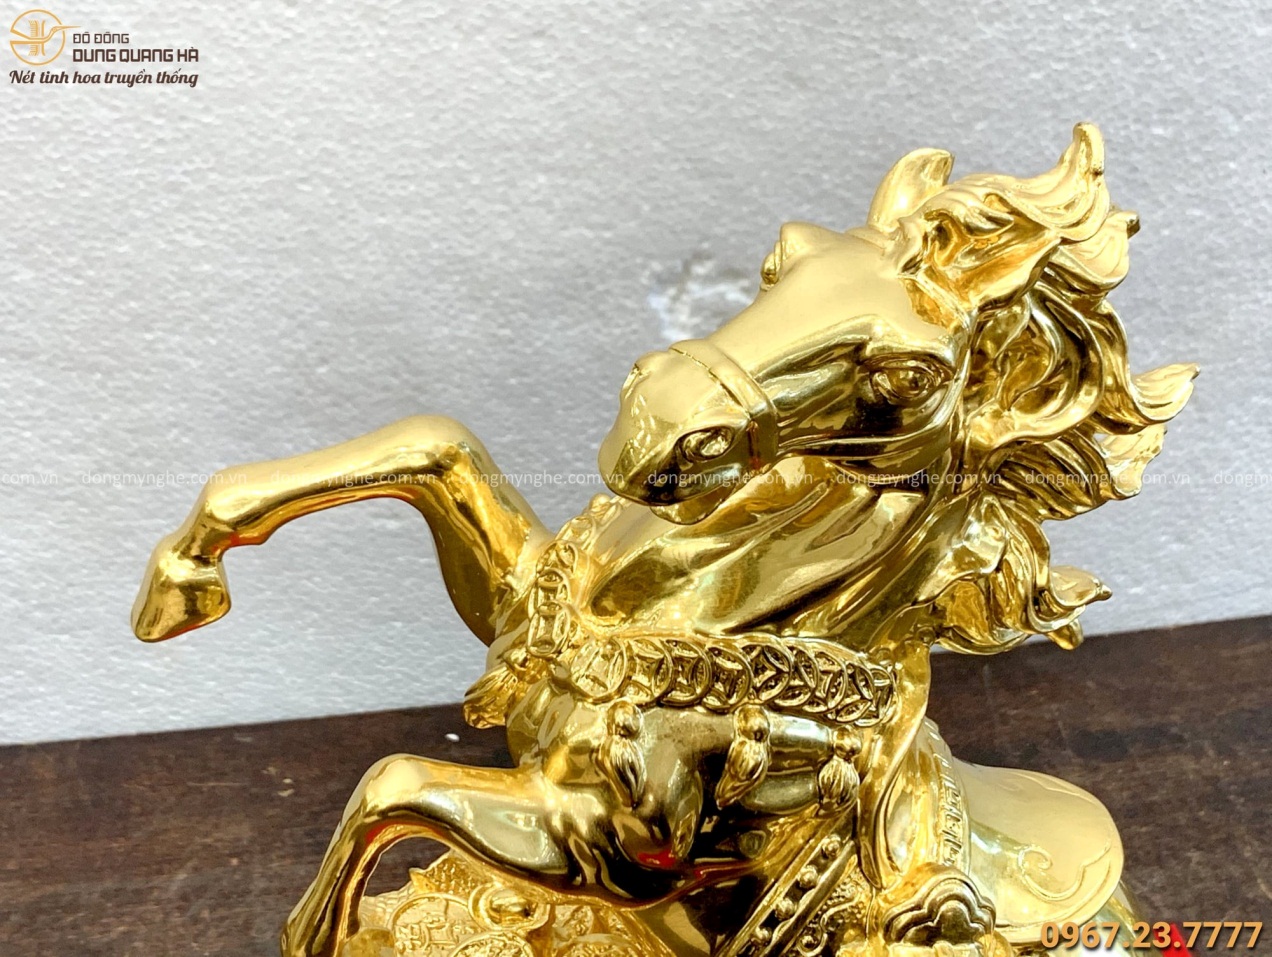 Tượng Ngựa hí phong thủy tài lộc bằng đồng mạ vàng 24k